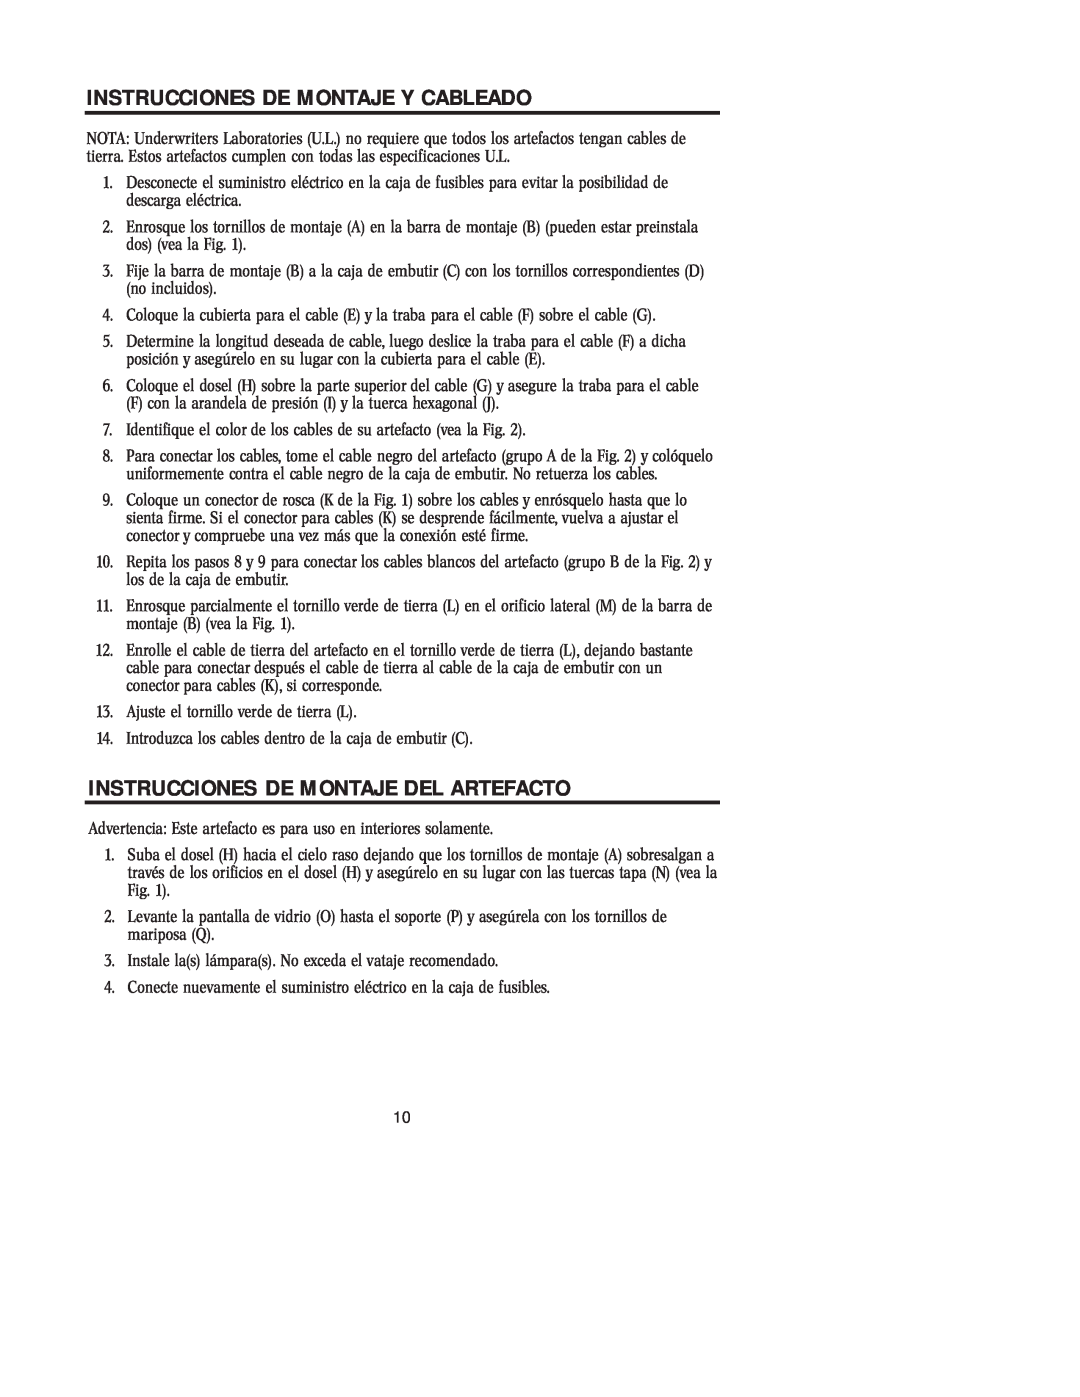 Westinghouse W-157 101404 owner manual Instrucciones De Montaje Y Cableado, Instrucciones De Montaje Del Artefacto 